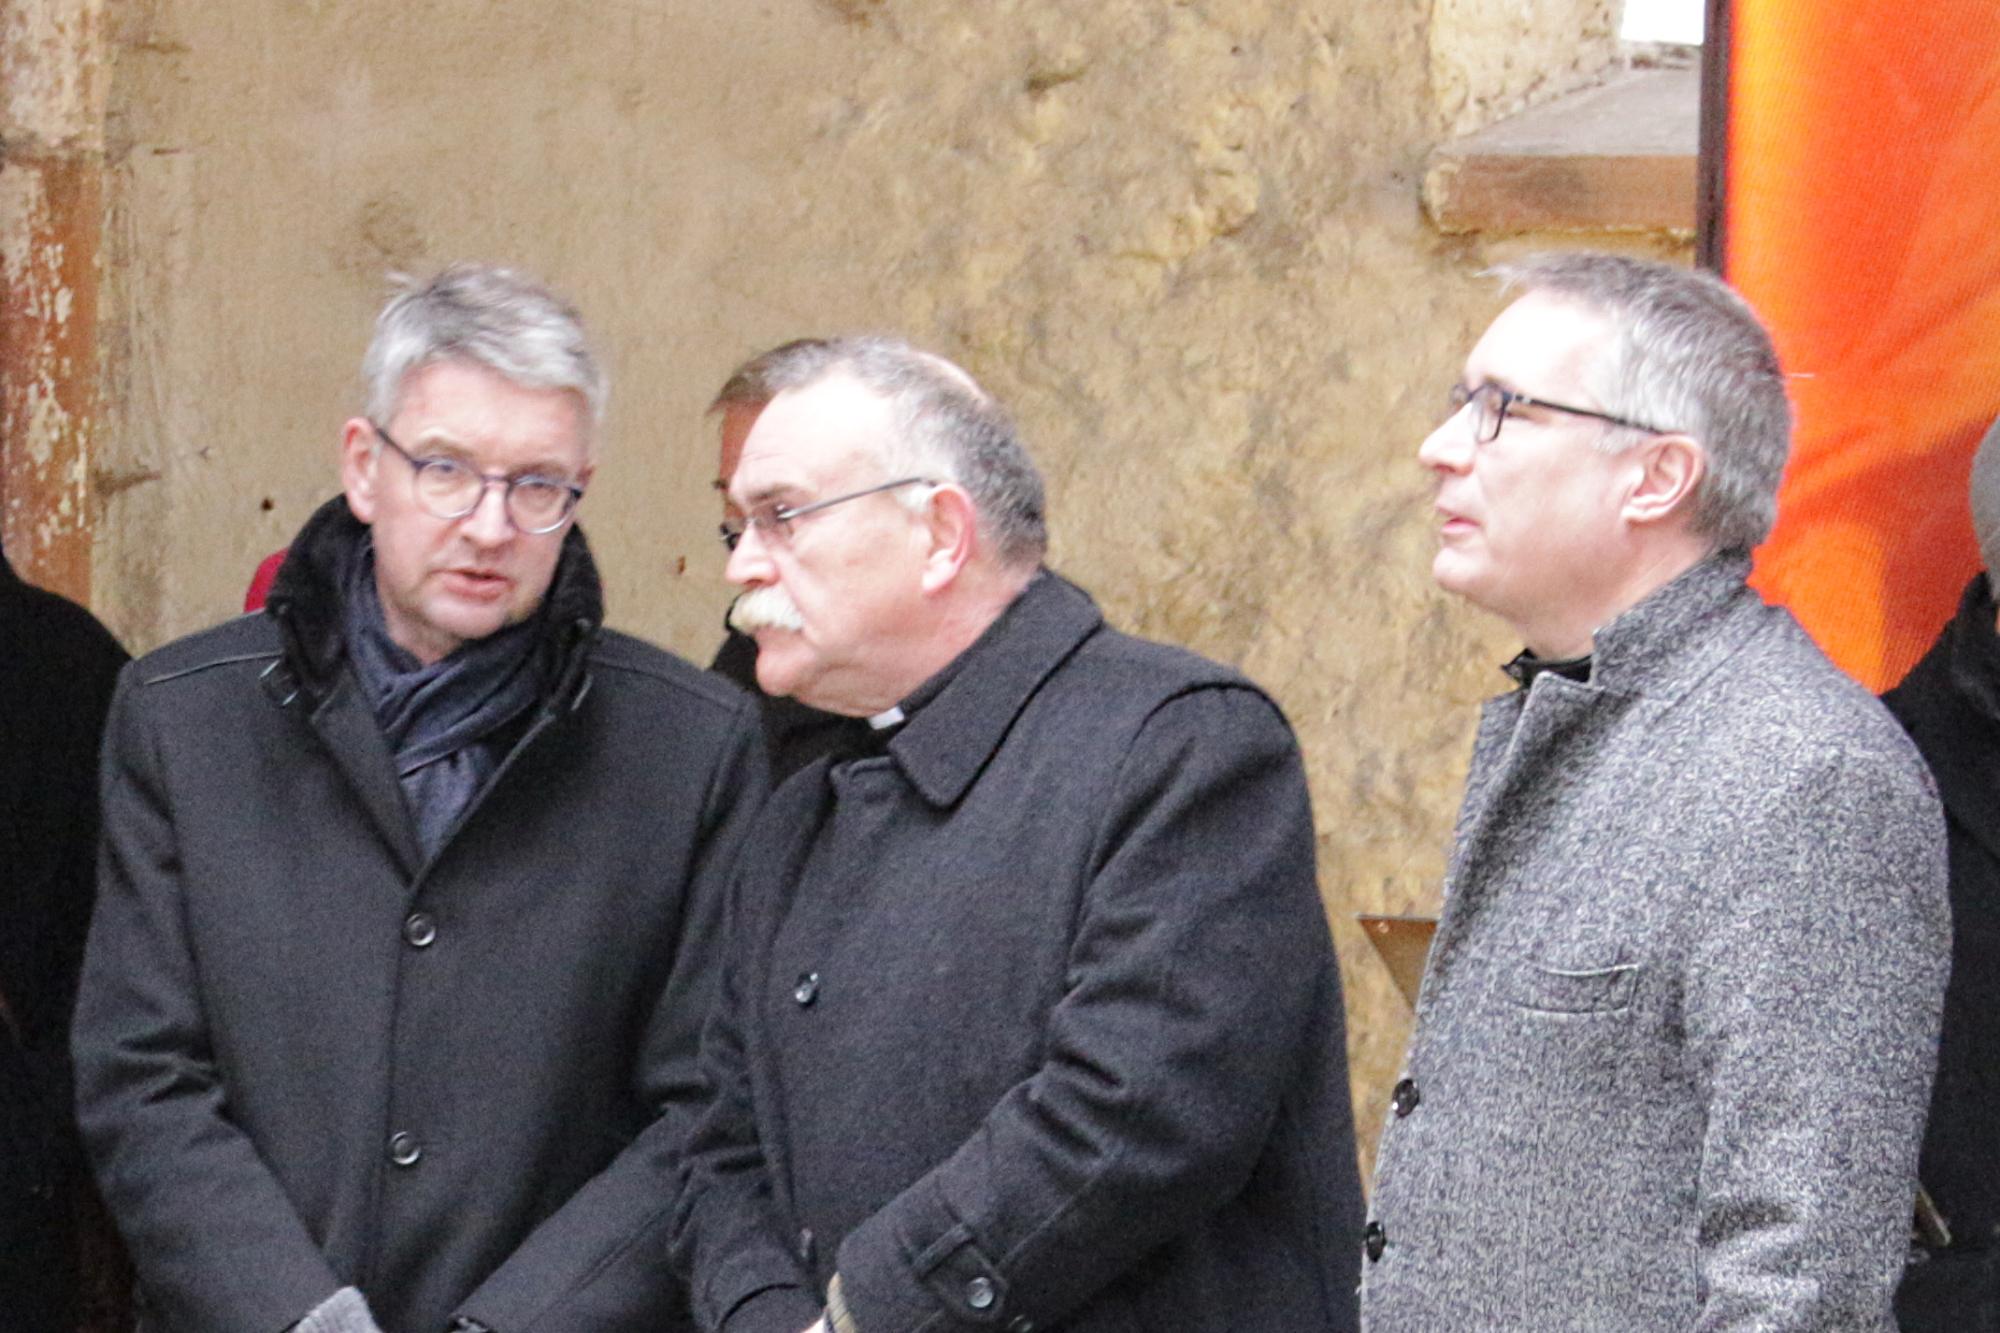 Mainz, 27. Februar 2020: Bischof Peter Kohlgraf (links) am Rande des Gedenkens an die Opfer des Bombenangriffs auf Mainz mit Dekan Markus Kölzer (mitte) und Dekan Andreas Klodt.